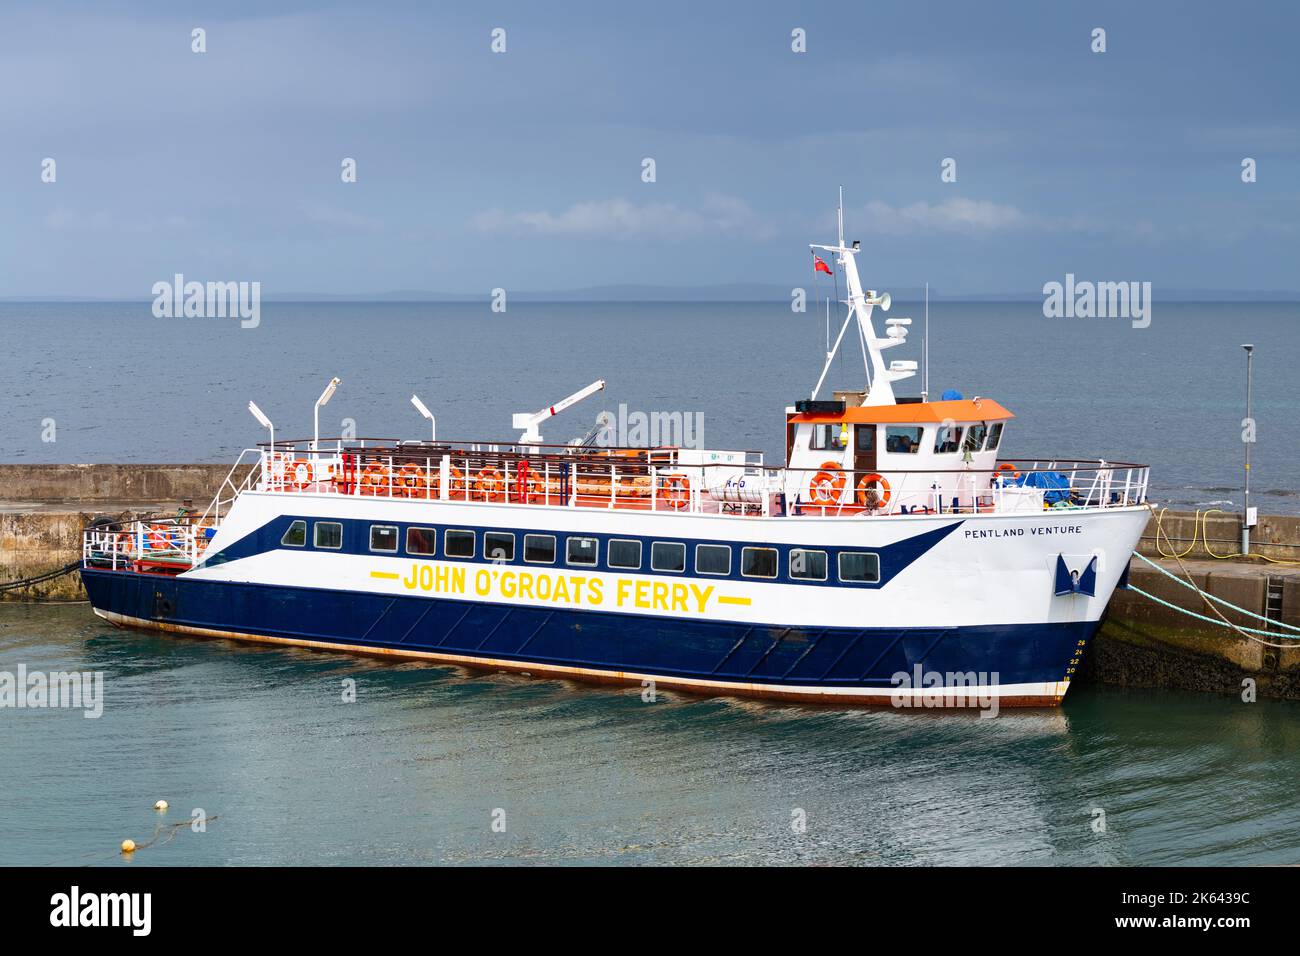 John O'Groats Ferry - Pentland Venture - vor Anker im Hafen, John O'Groats, Caithness, Schottland, Großbritannien Stockfoto